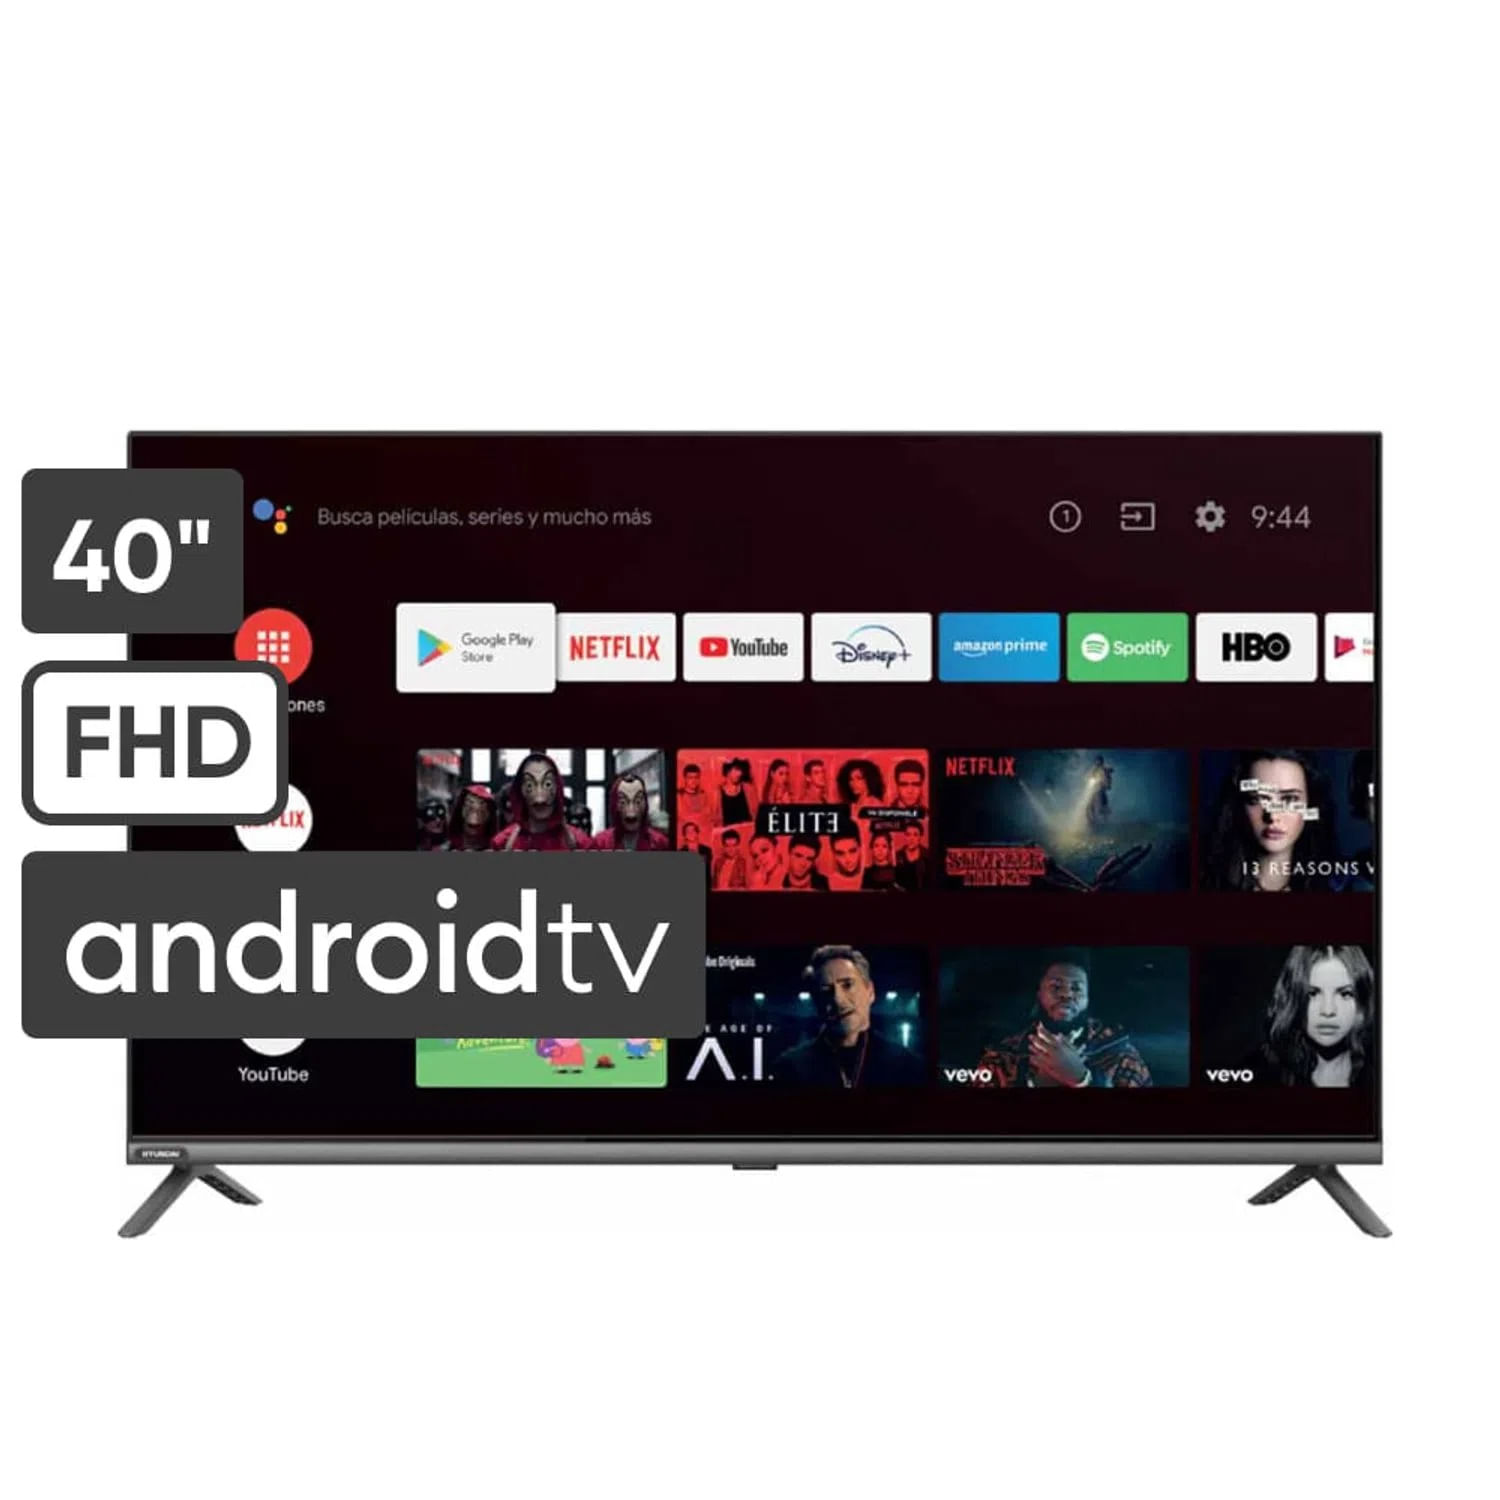 Televisor 40" Hyundai Full HD HYLED4022AiM Android tv